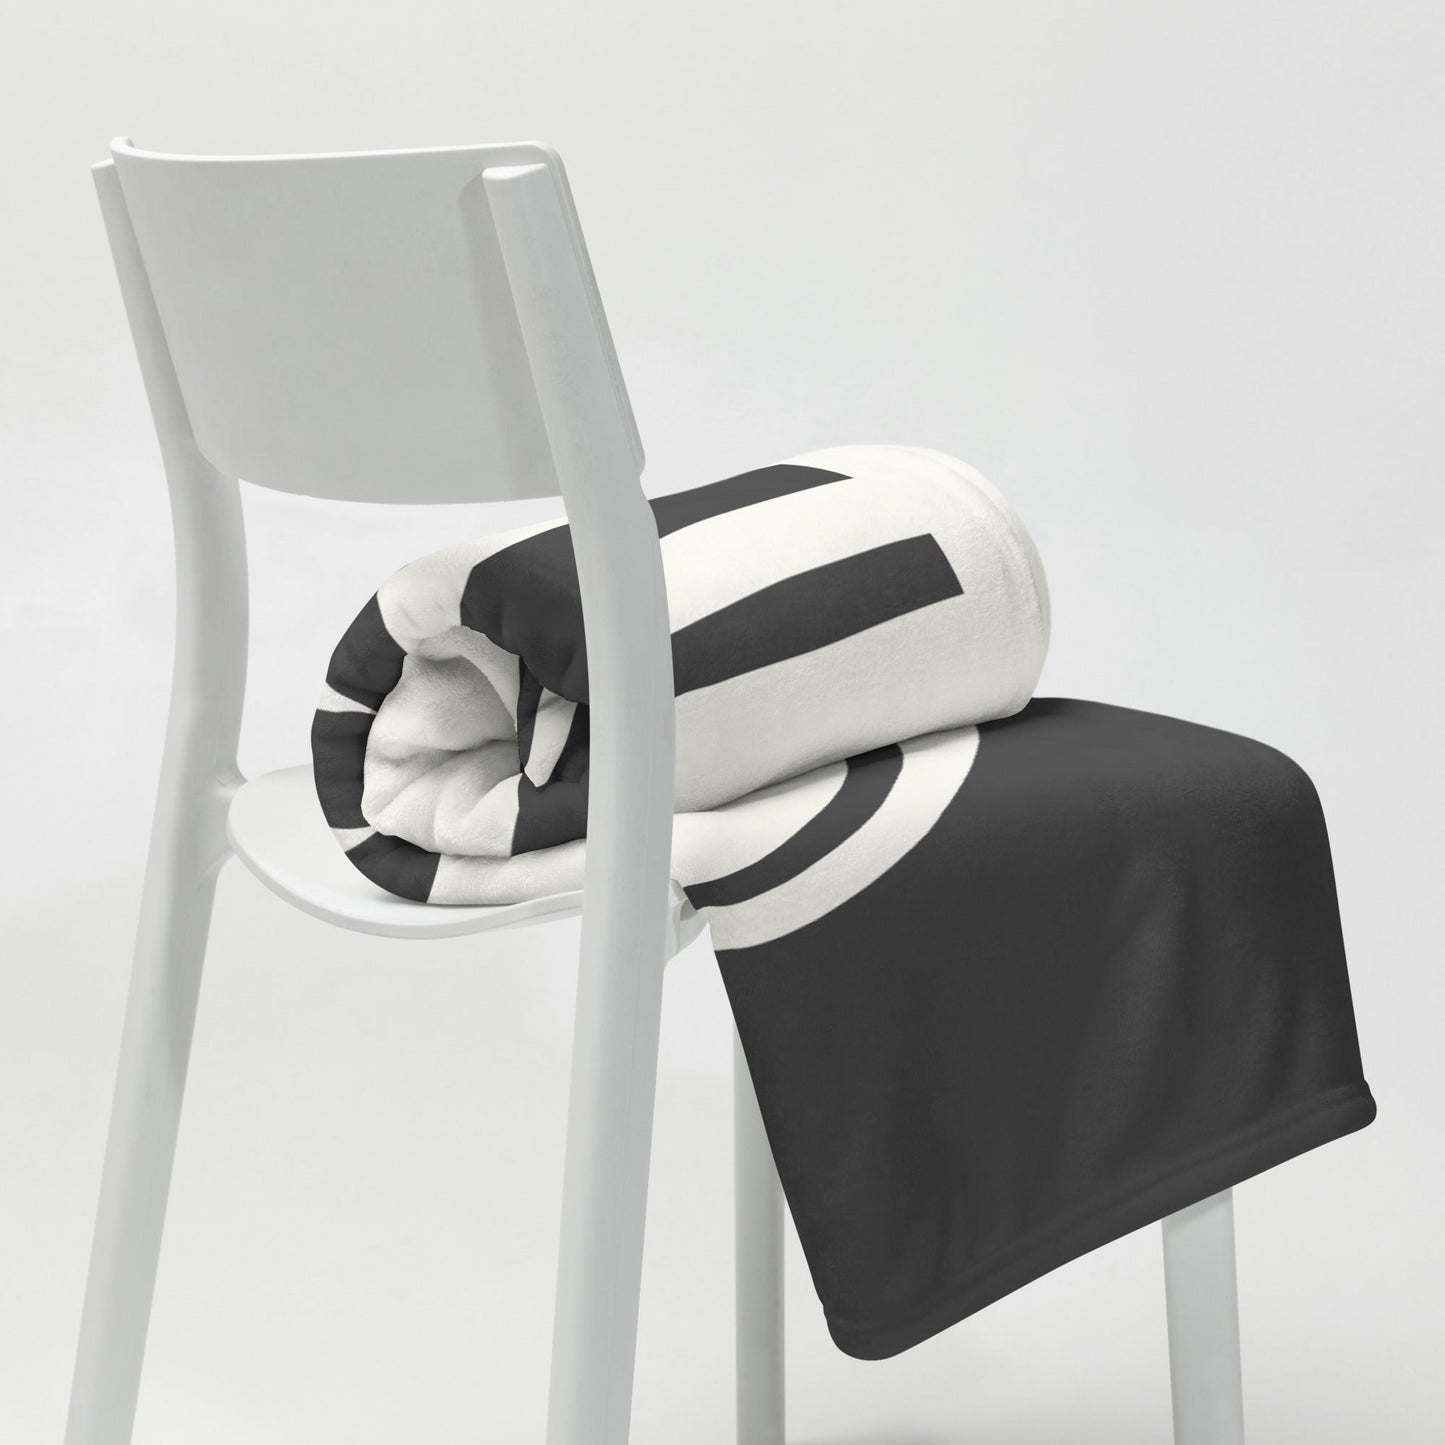 Unique Travel Gift Throw Blanket - White Oval • YOW Ottawa • YHM Designs - Image 03